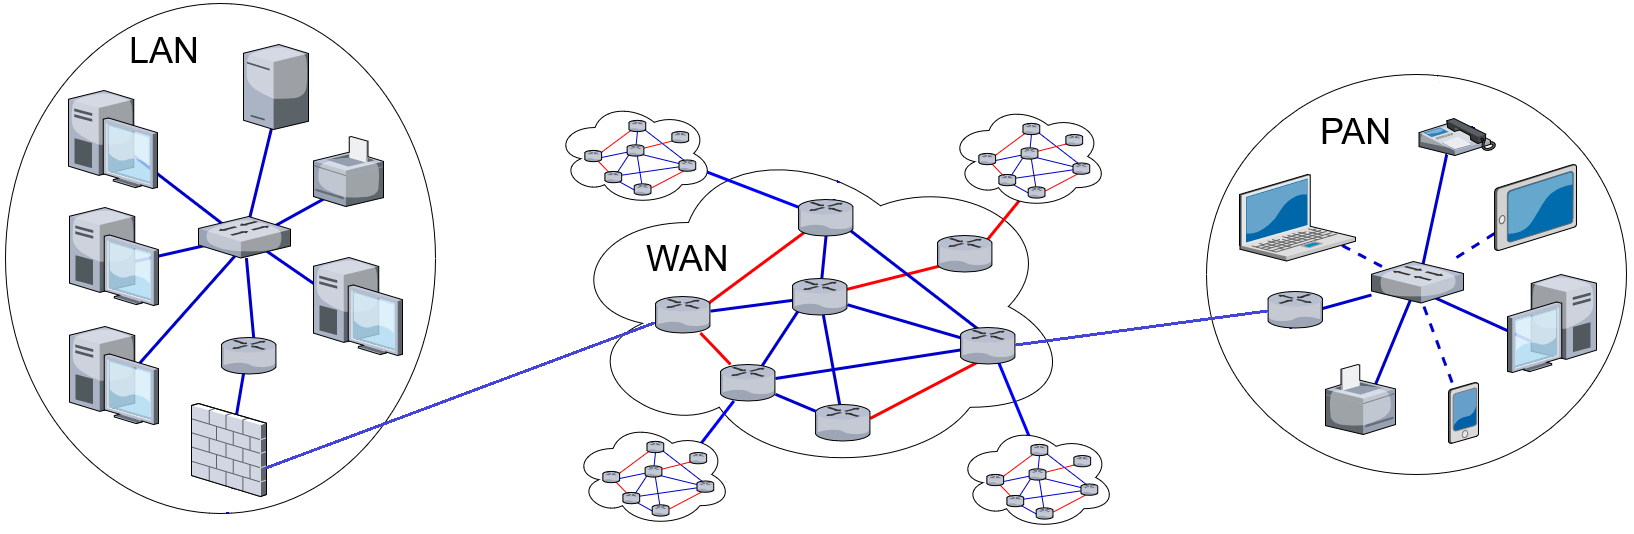 Le réseau WAN